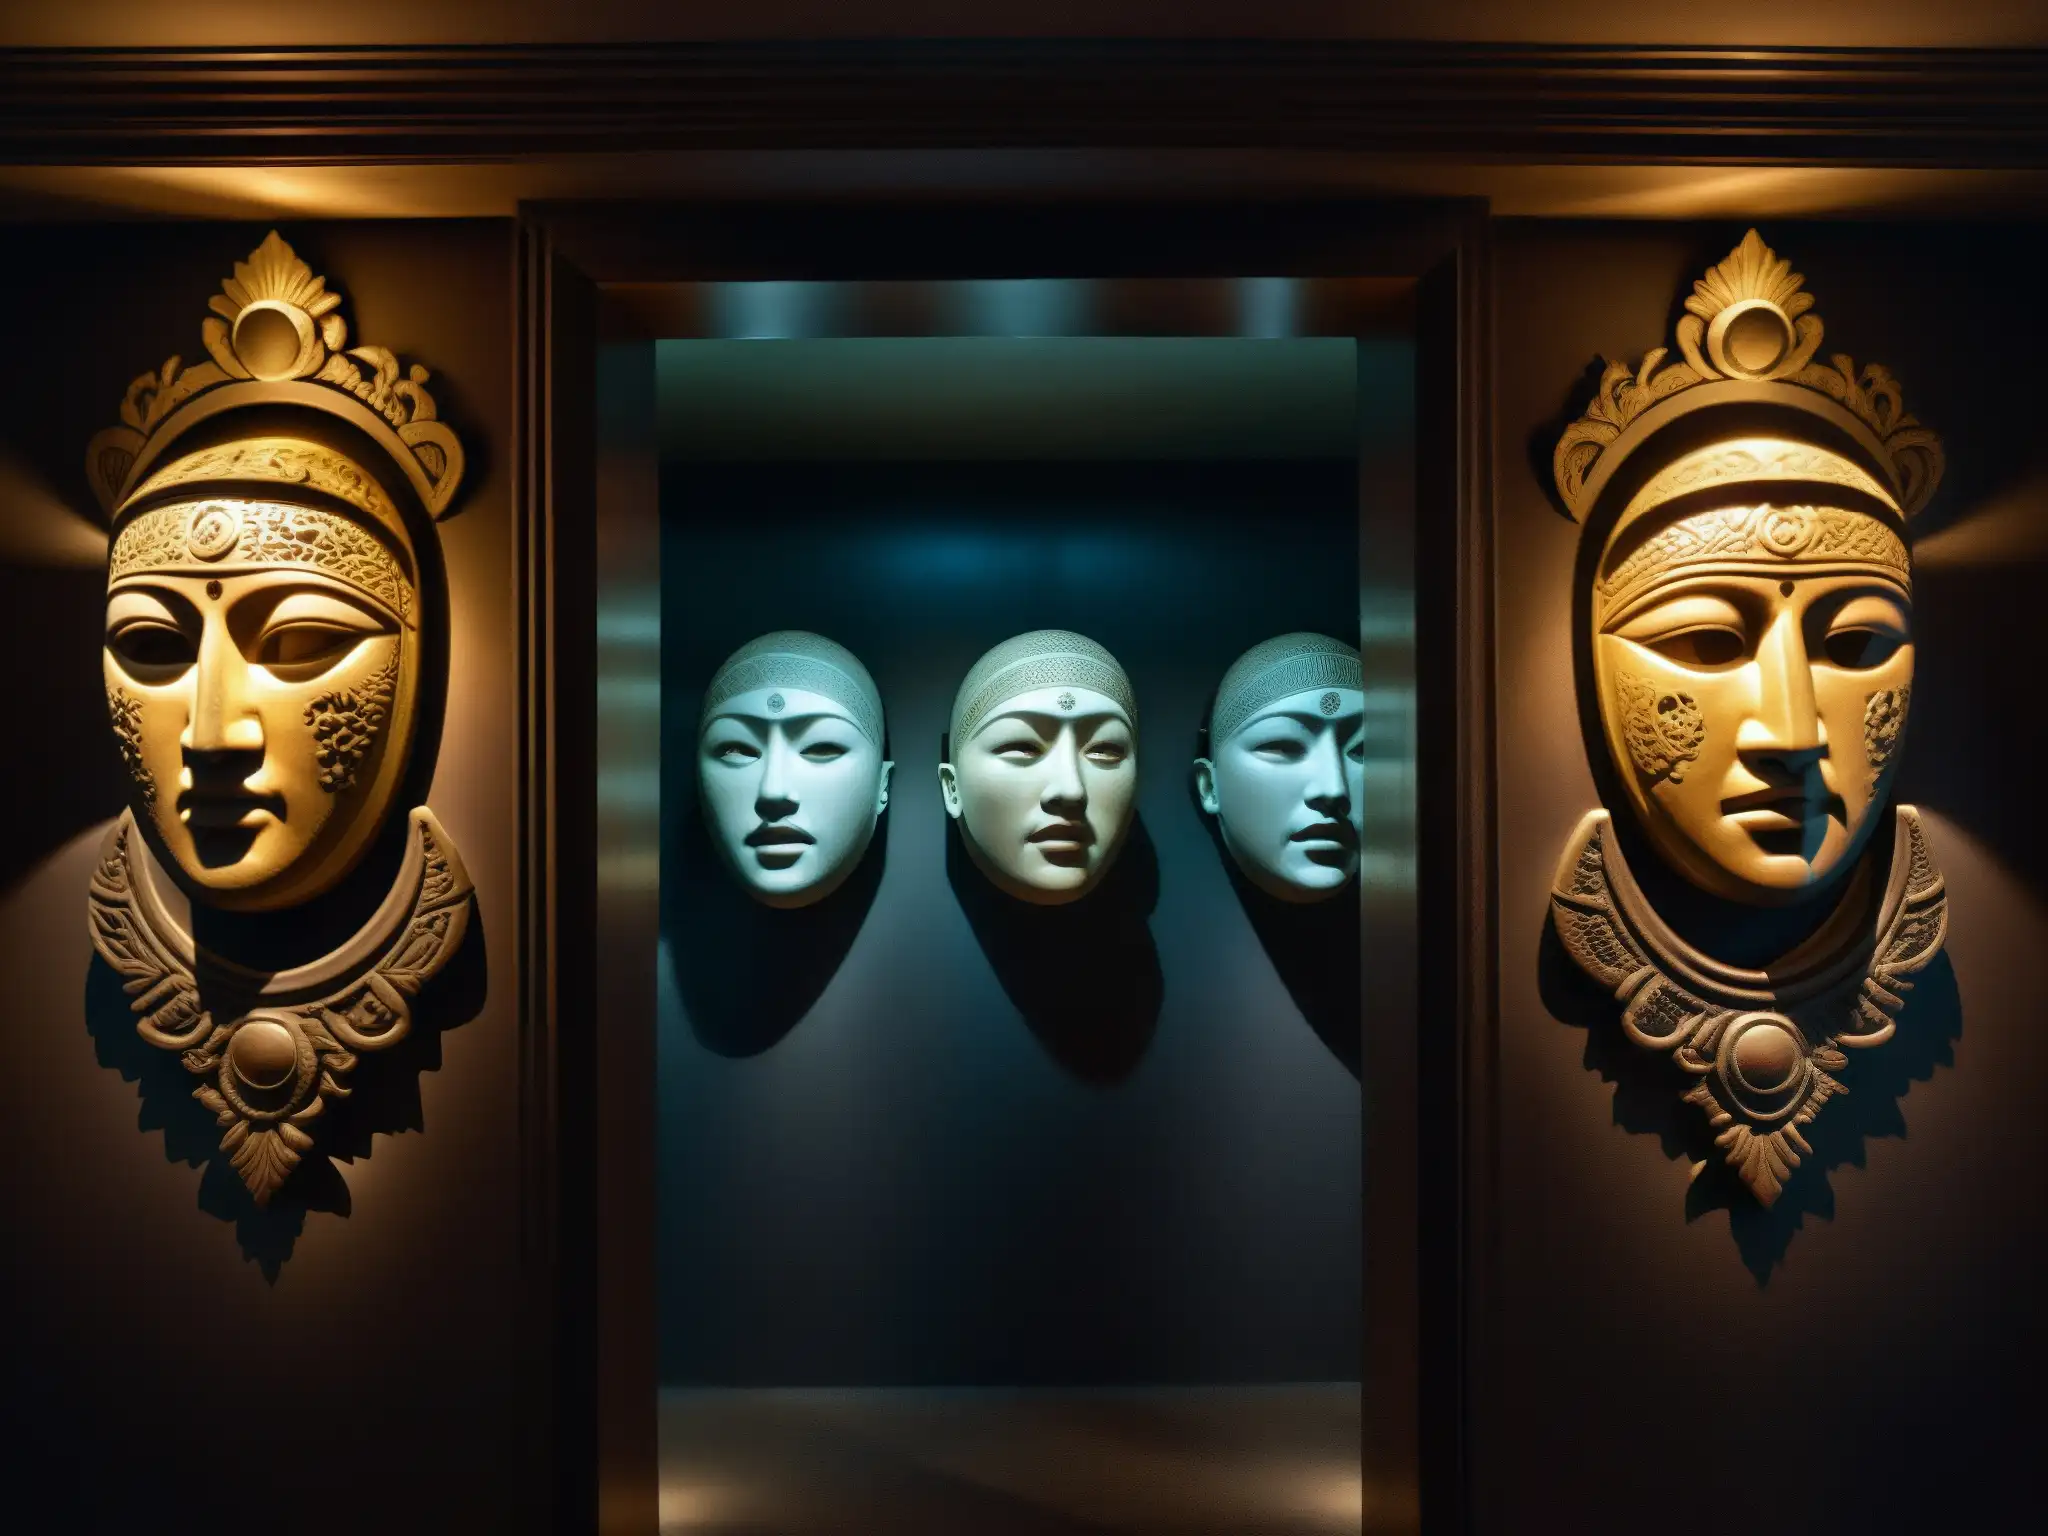 Espejos malditos en la antigua cámara de Mayong India, reflejando rostros distorsionados en la penumbra sobrenatural